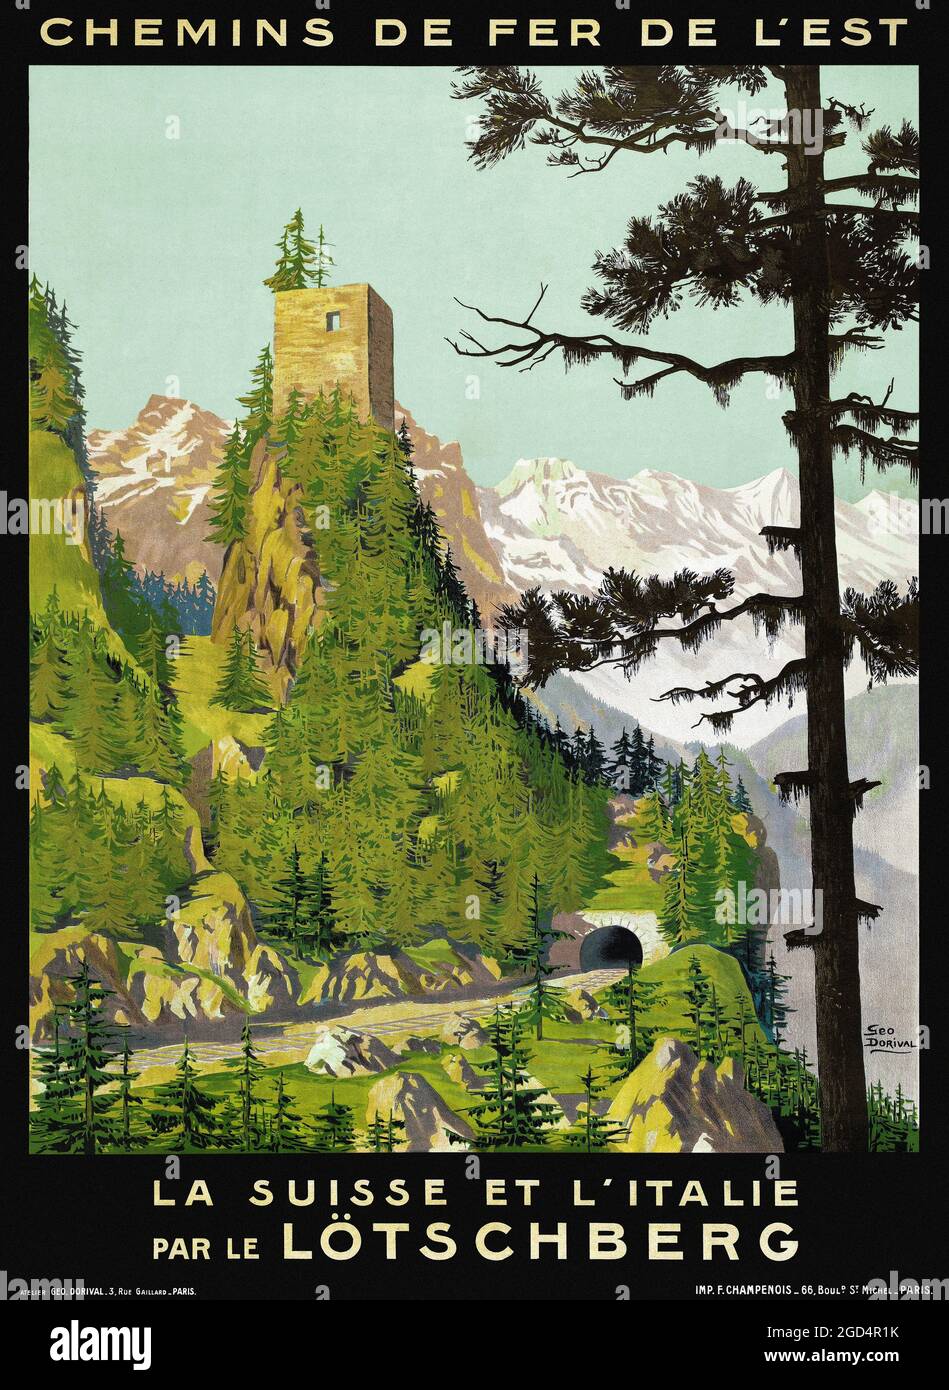 Chemins de fer de l'Est. La Suisse et l'Italie par le Lötschberg by Geo Dorival (1879-1968). Restored vintage poster published in 1910 in Switzerland. Stock Photo